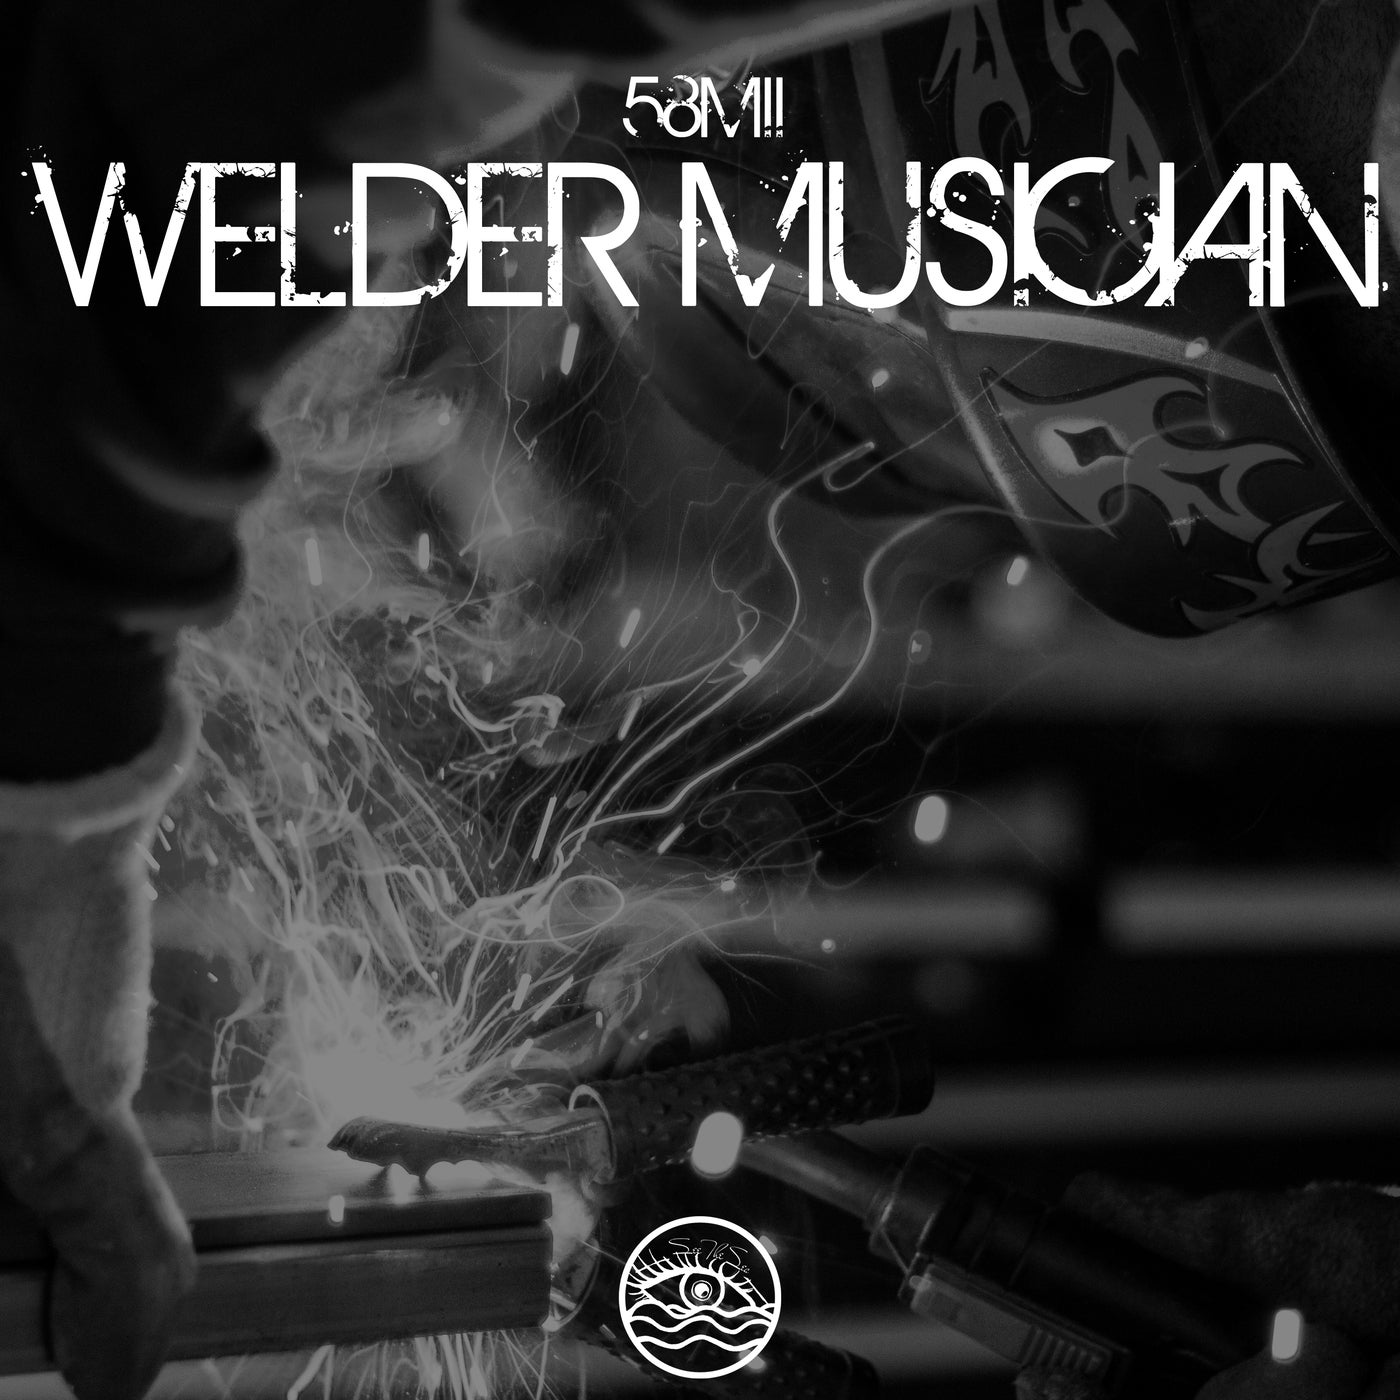 Welder Musician